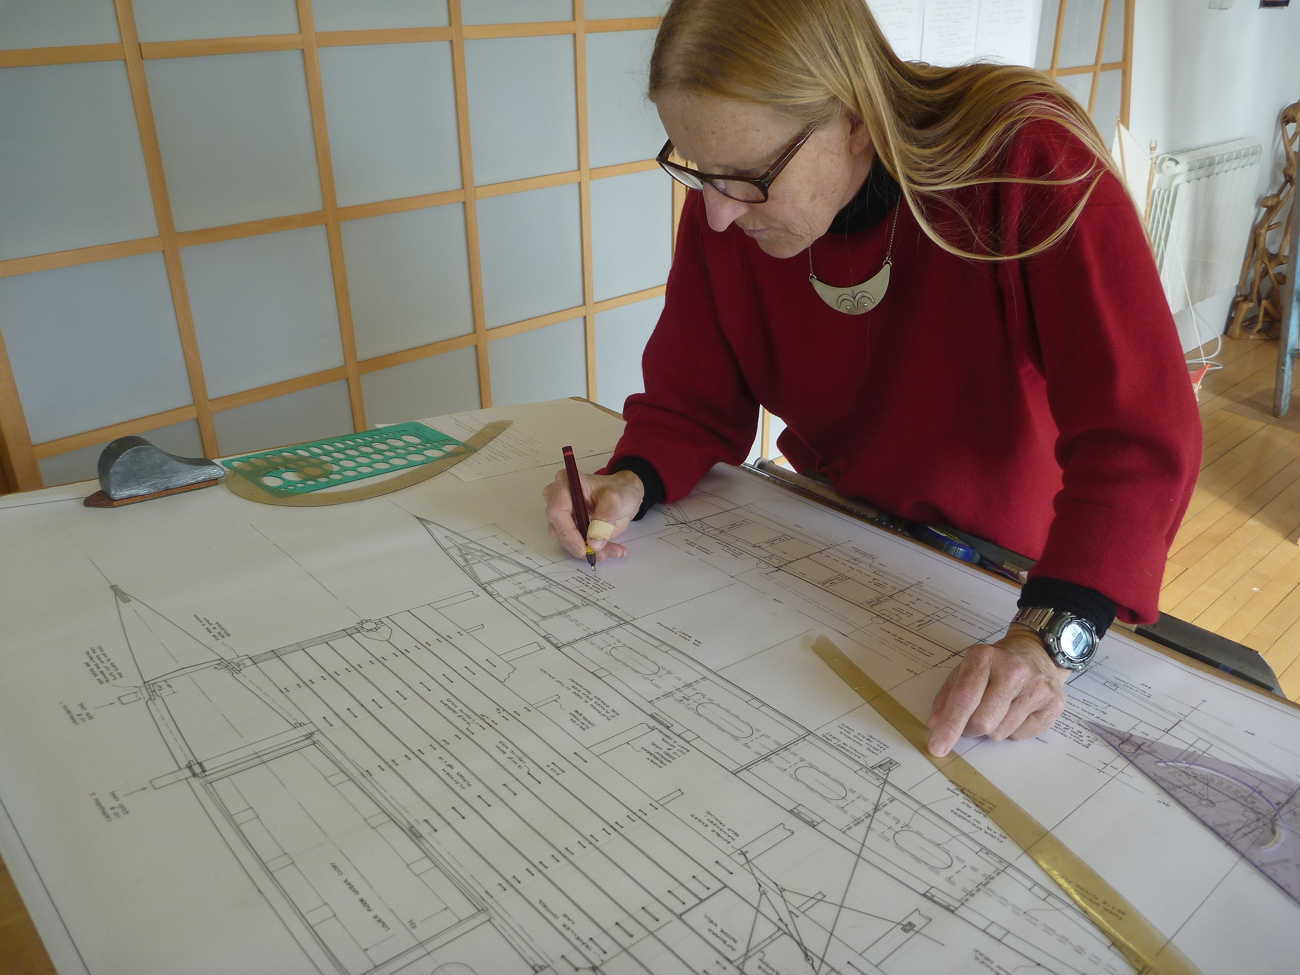 Hanneke Boon in the JWD design studio